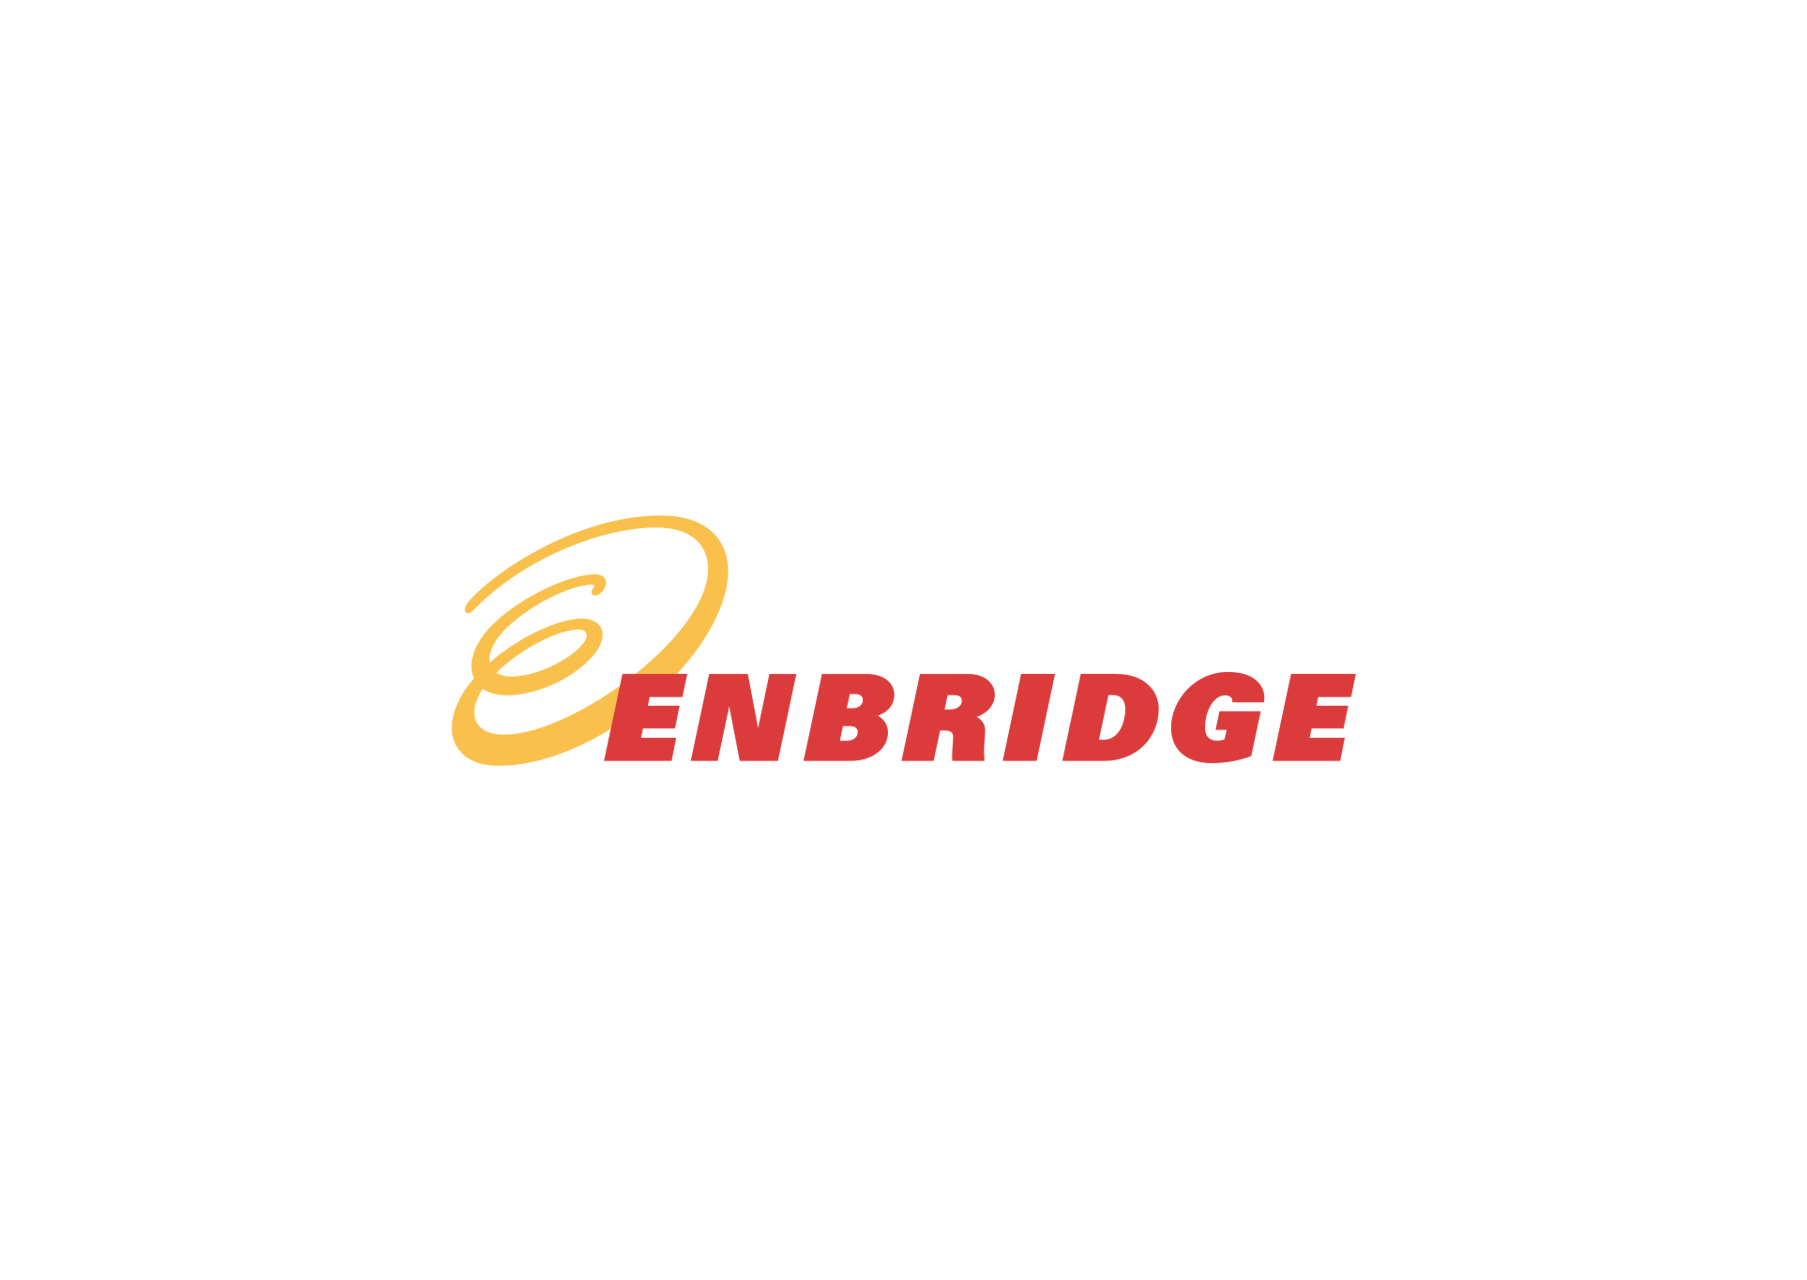 enbridge-s-internal-contractor-safety-excellence-award-gcs-energy-services